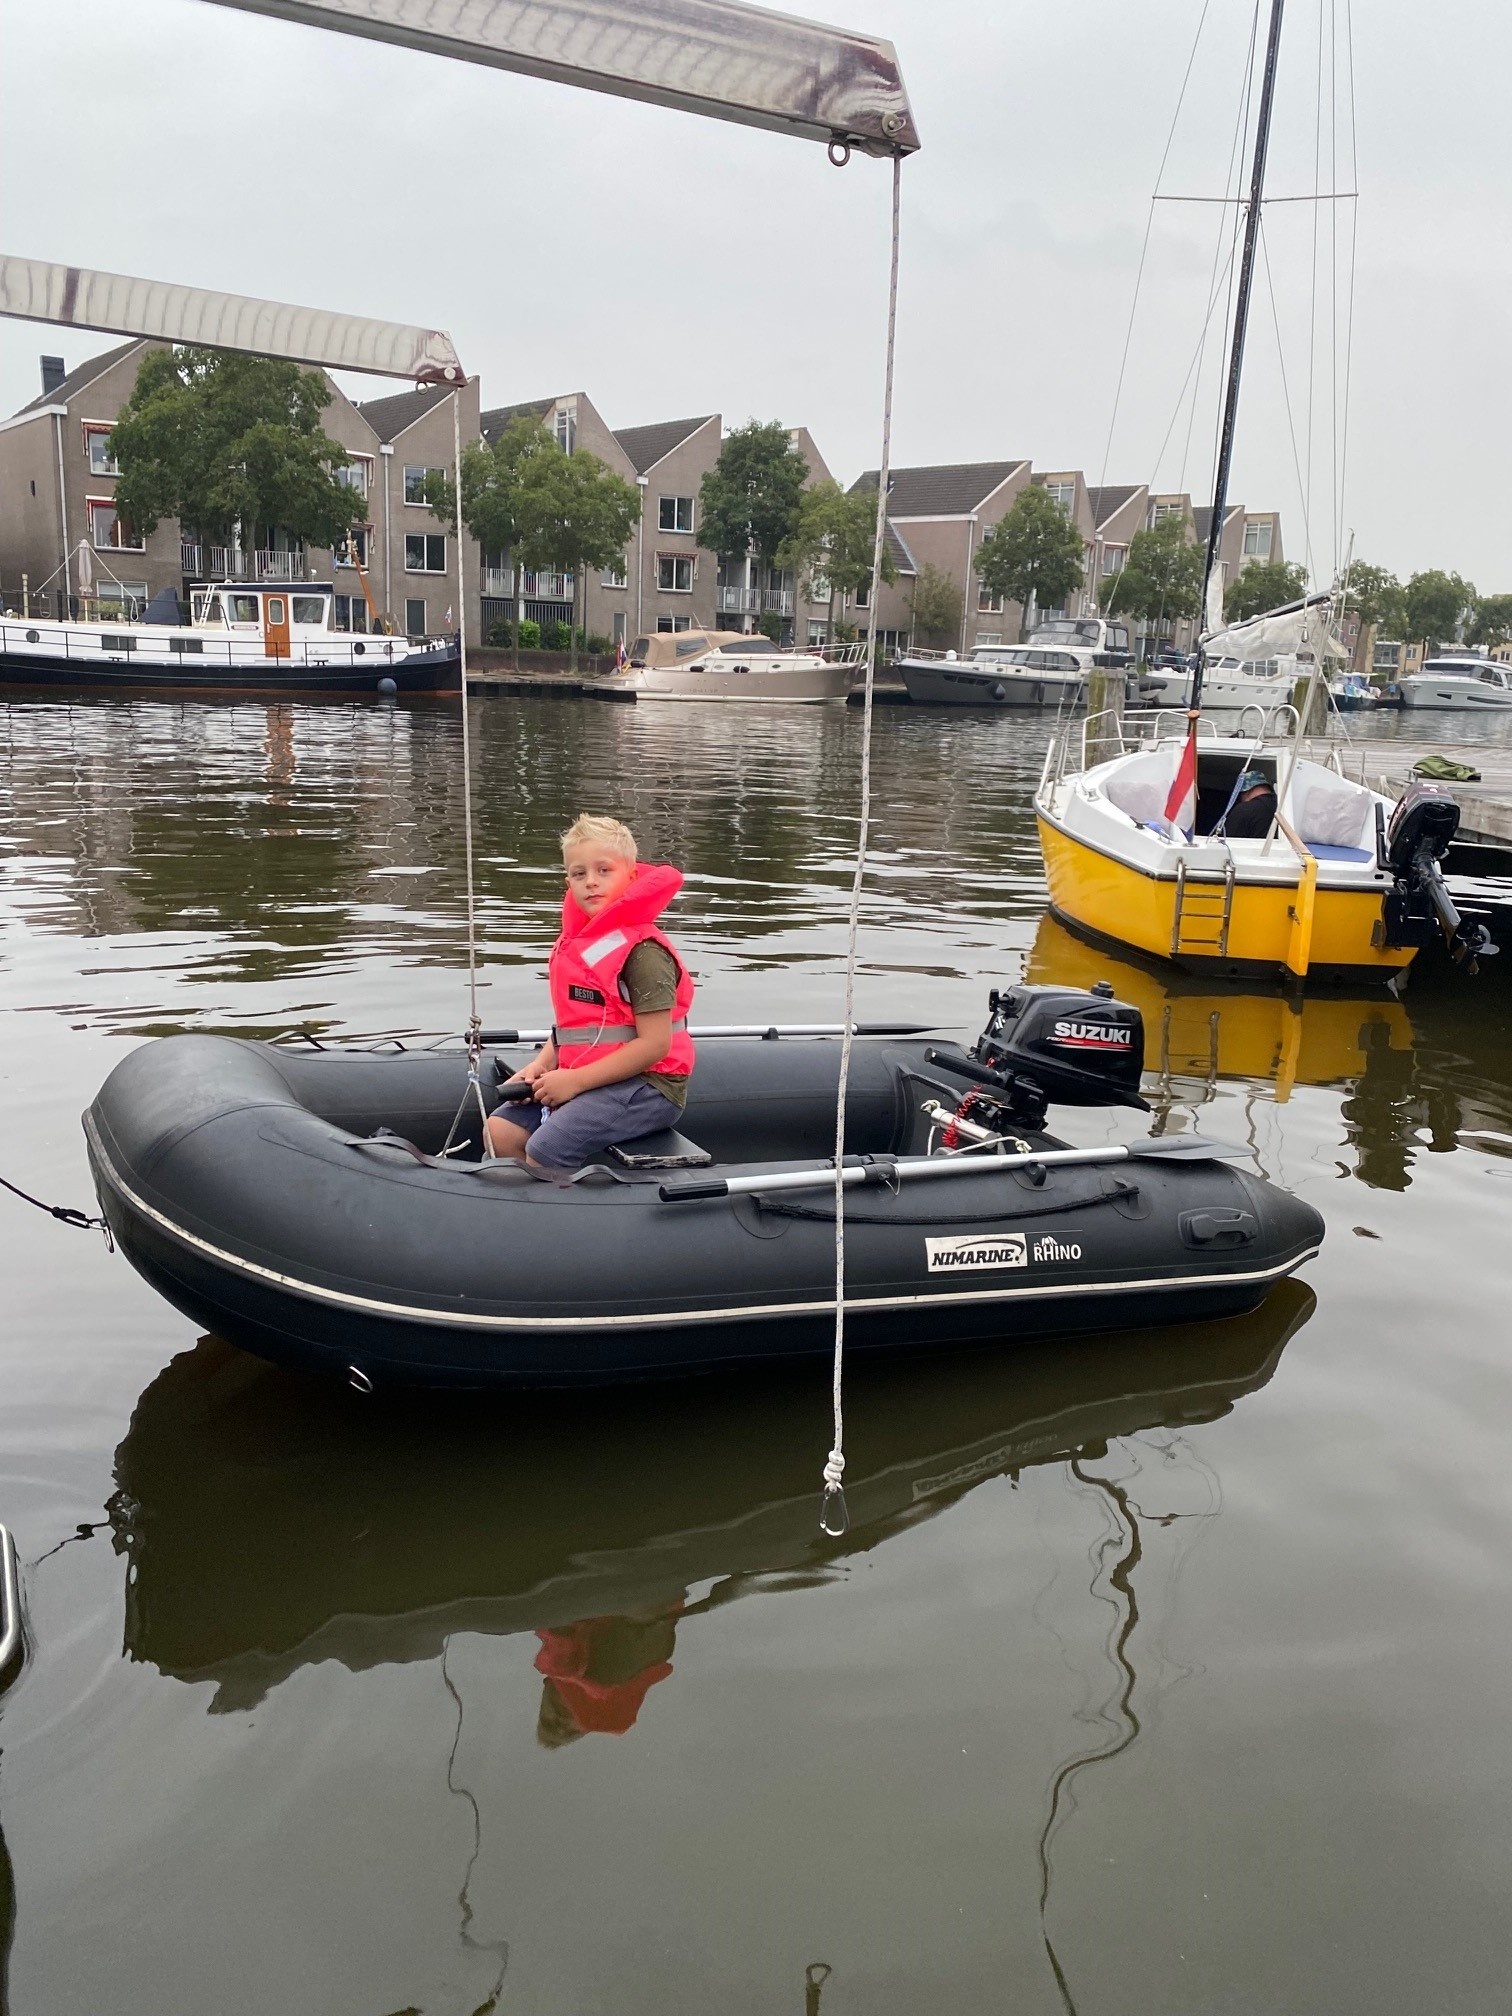 Kenniscentrum - Een rubberboot kopen: waar moet ik letten? Boottotaal.nl